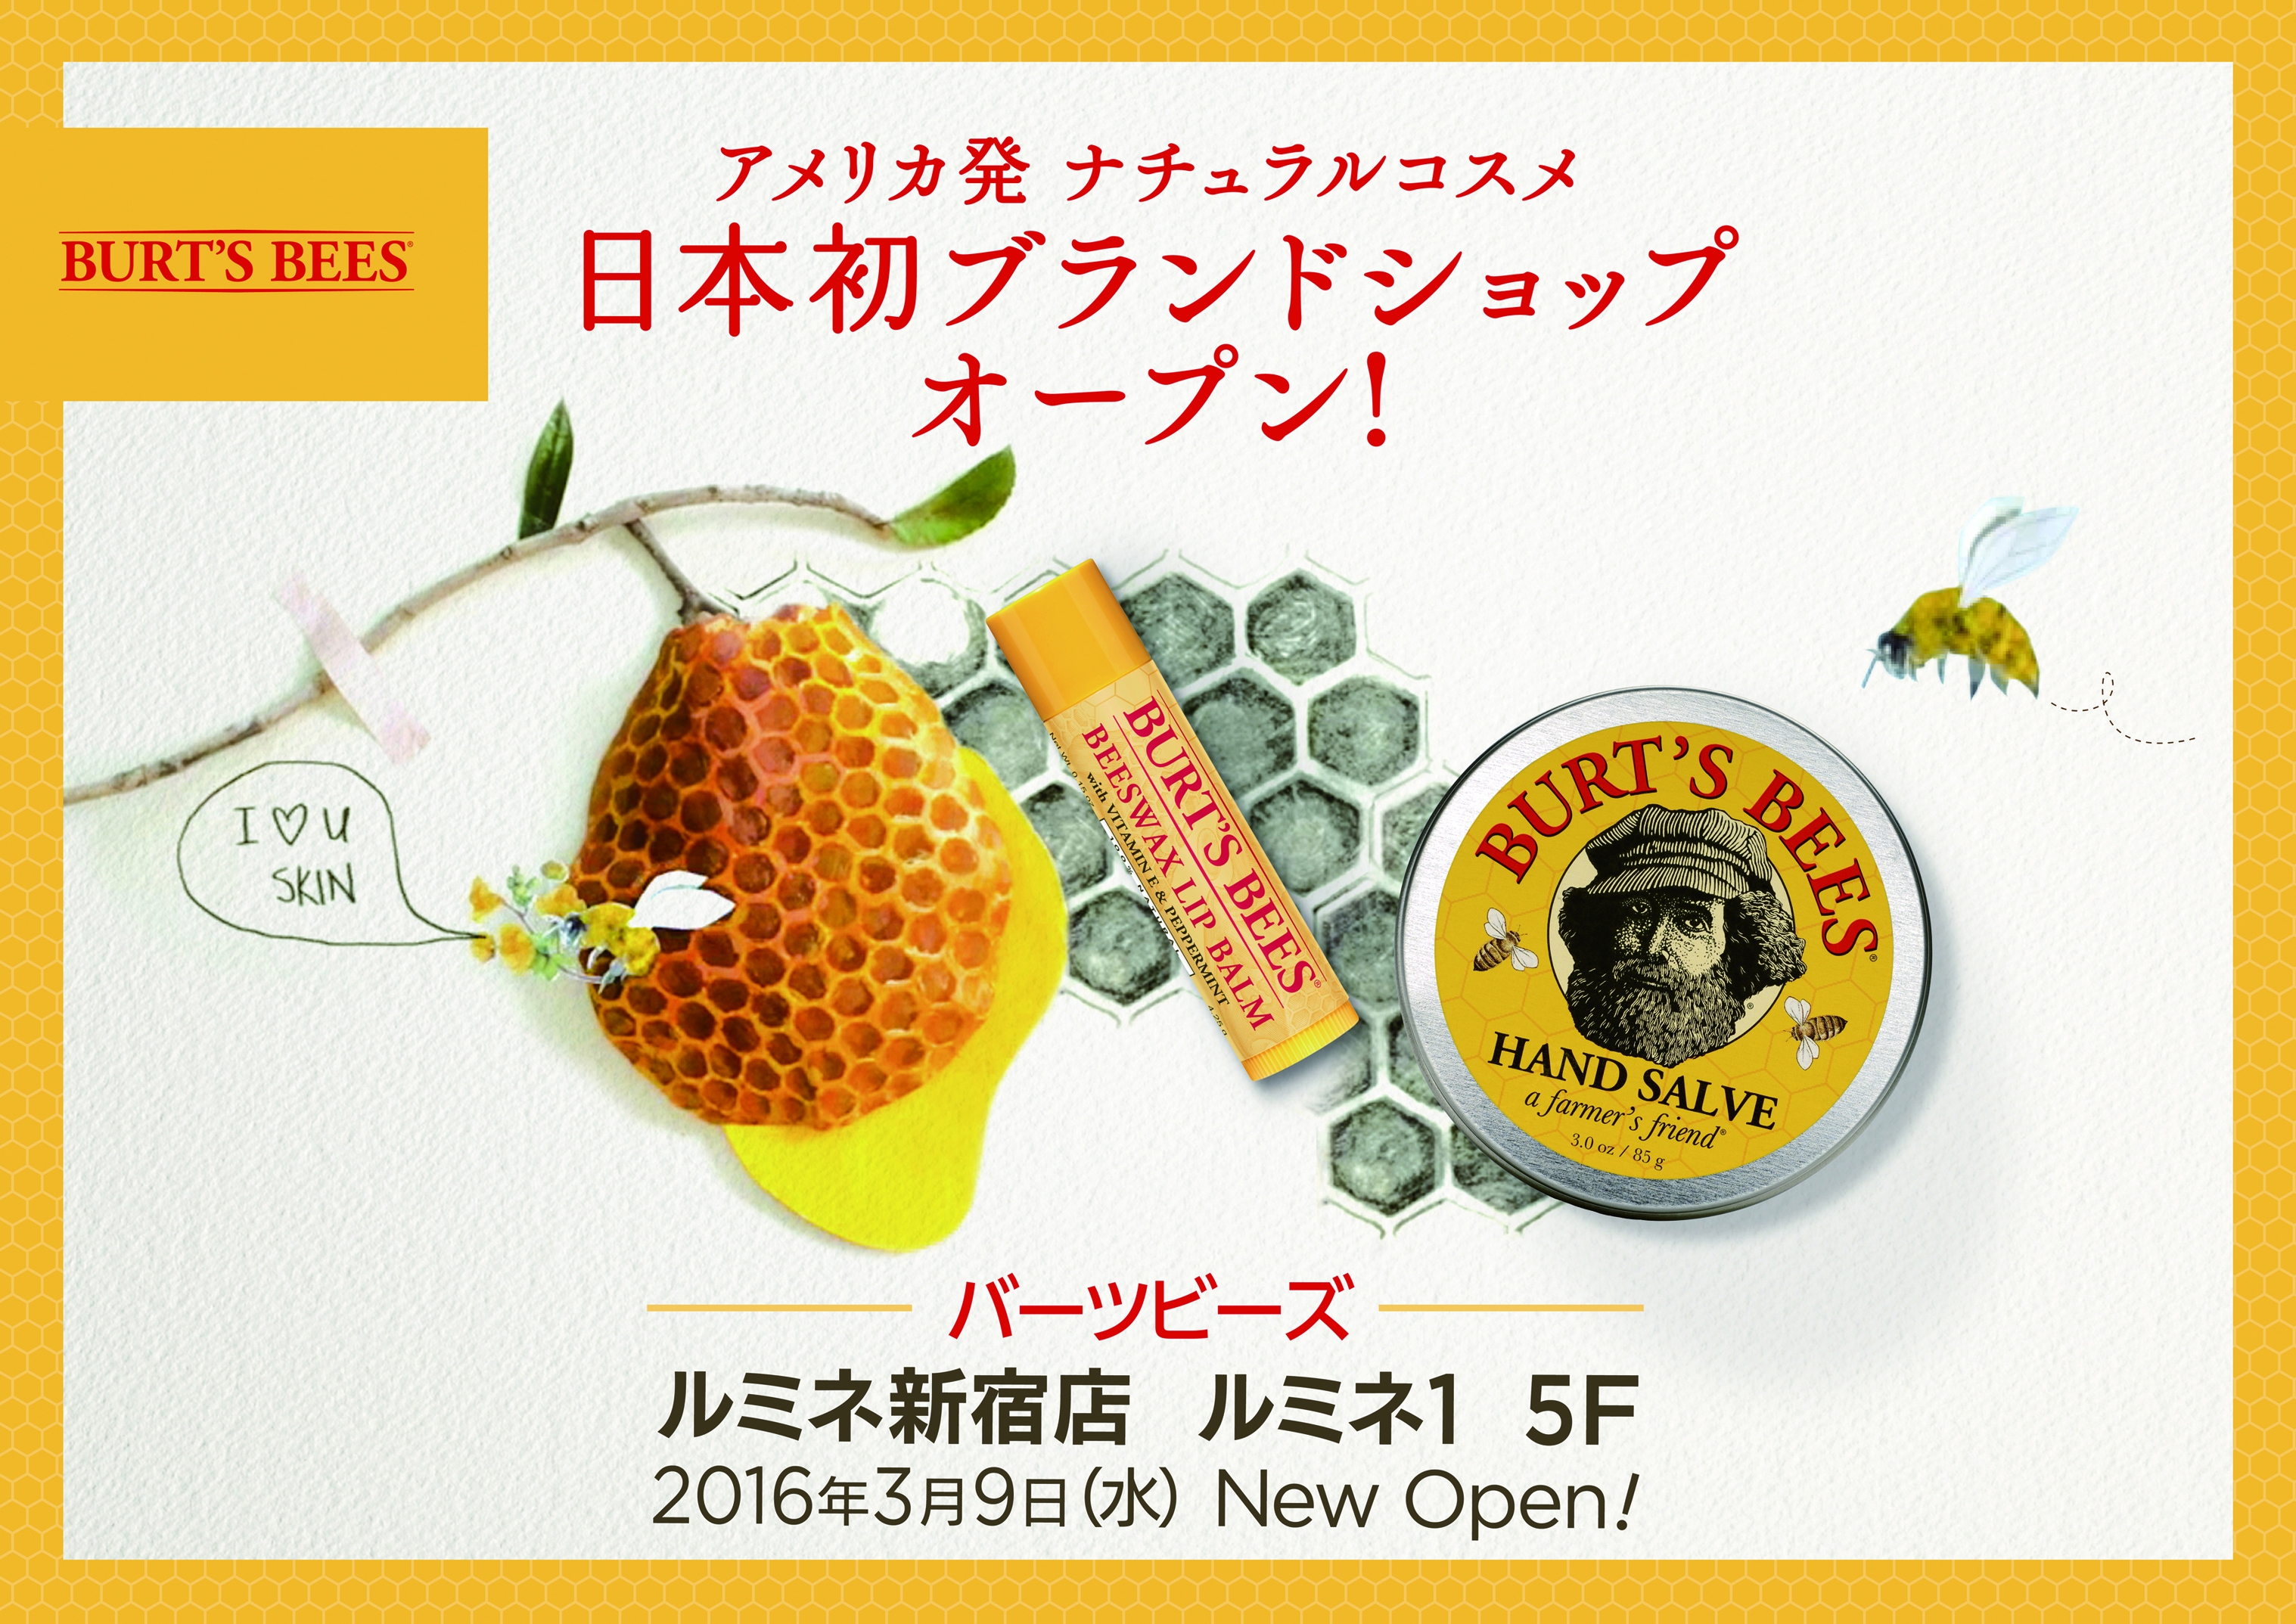 オジサンの顔と蜂のイラストでおなじみ ナチュラルコスメブランド バーツビーズ が日本初のブランドショップをオープン Pouch ポーチ